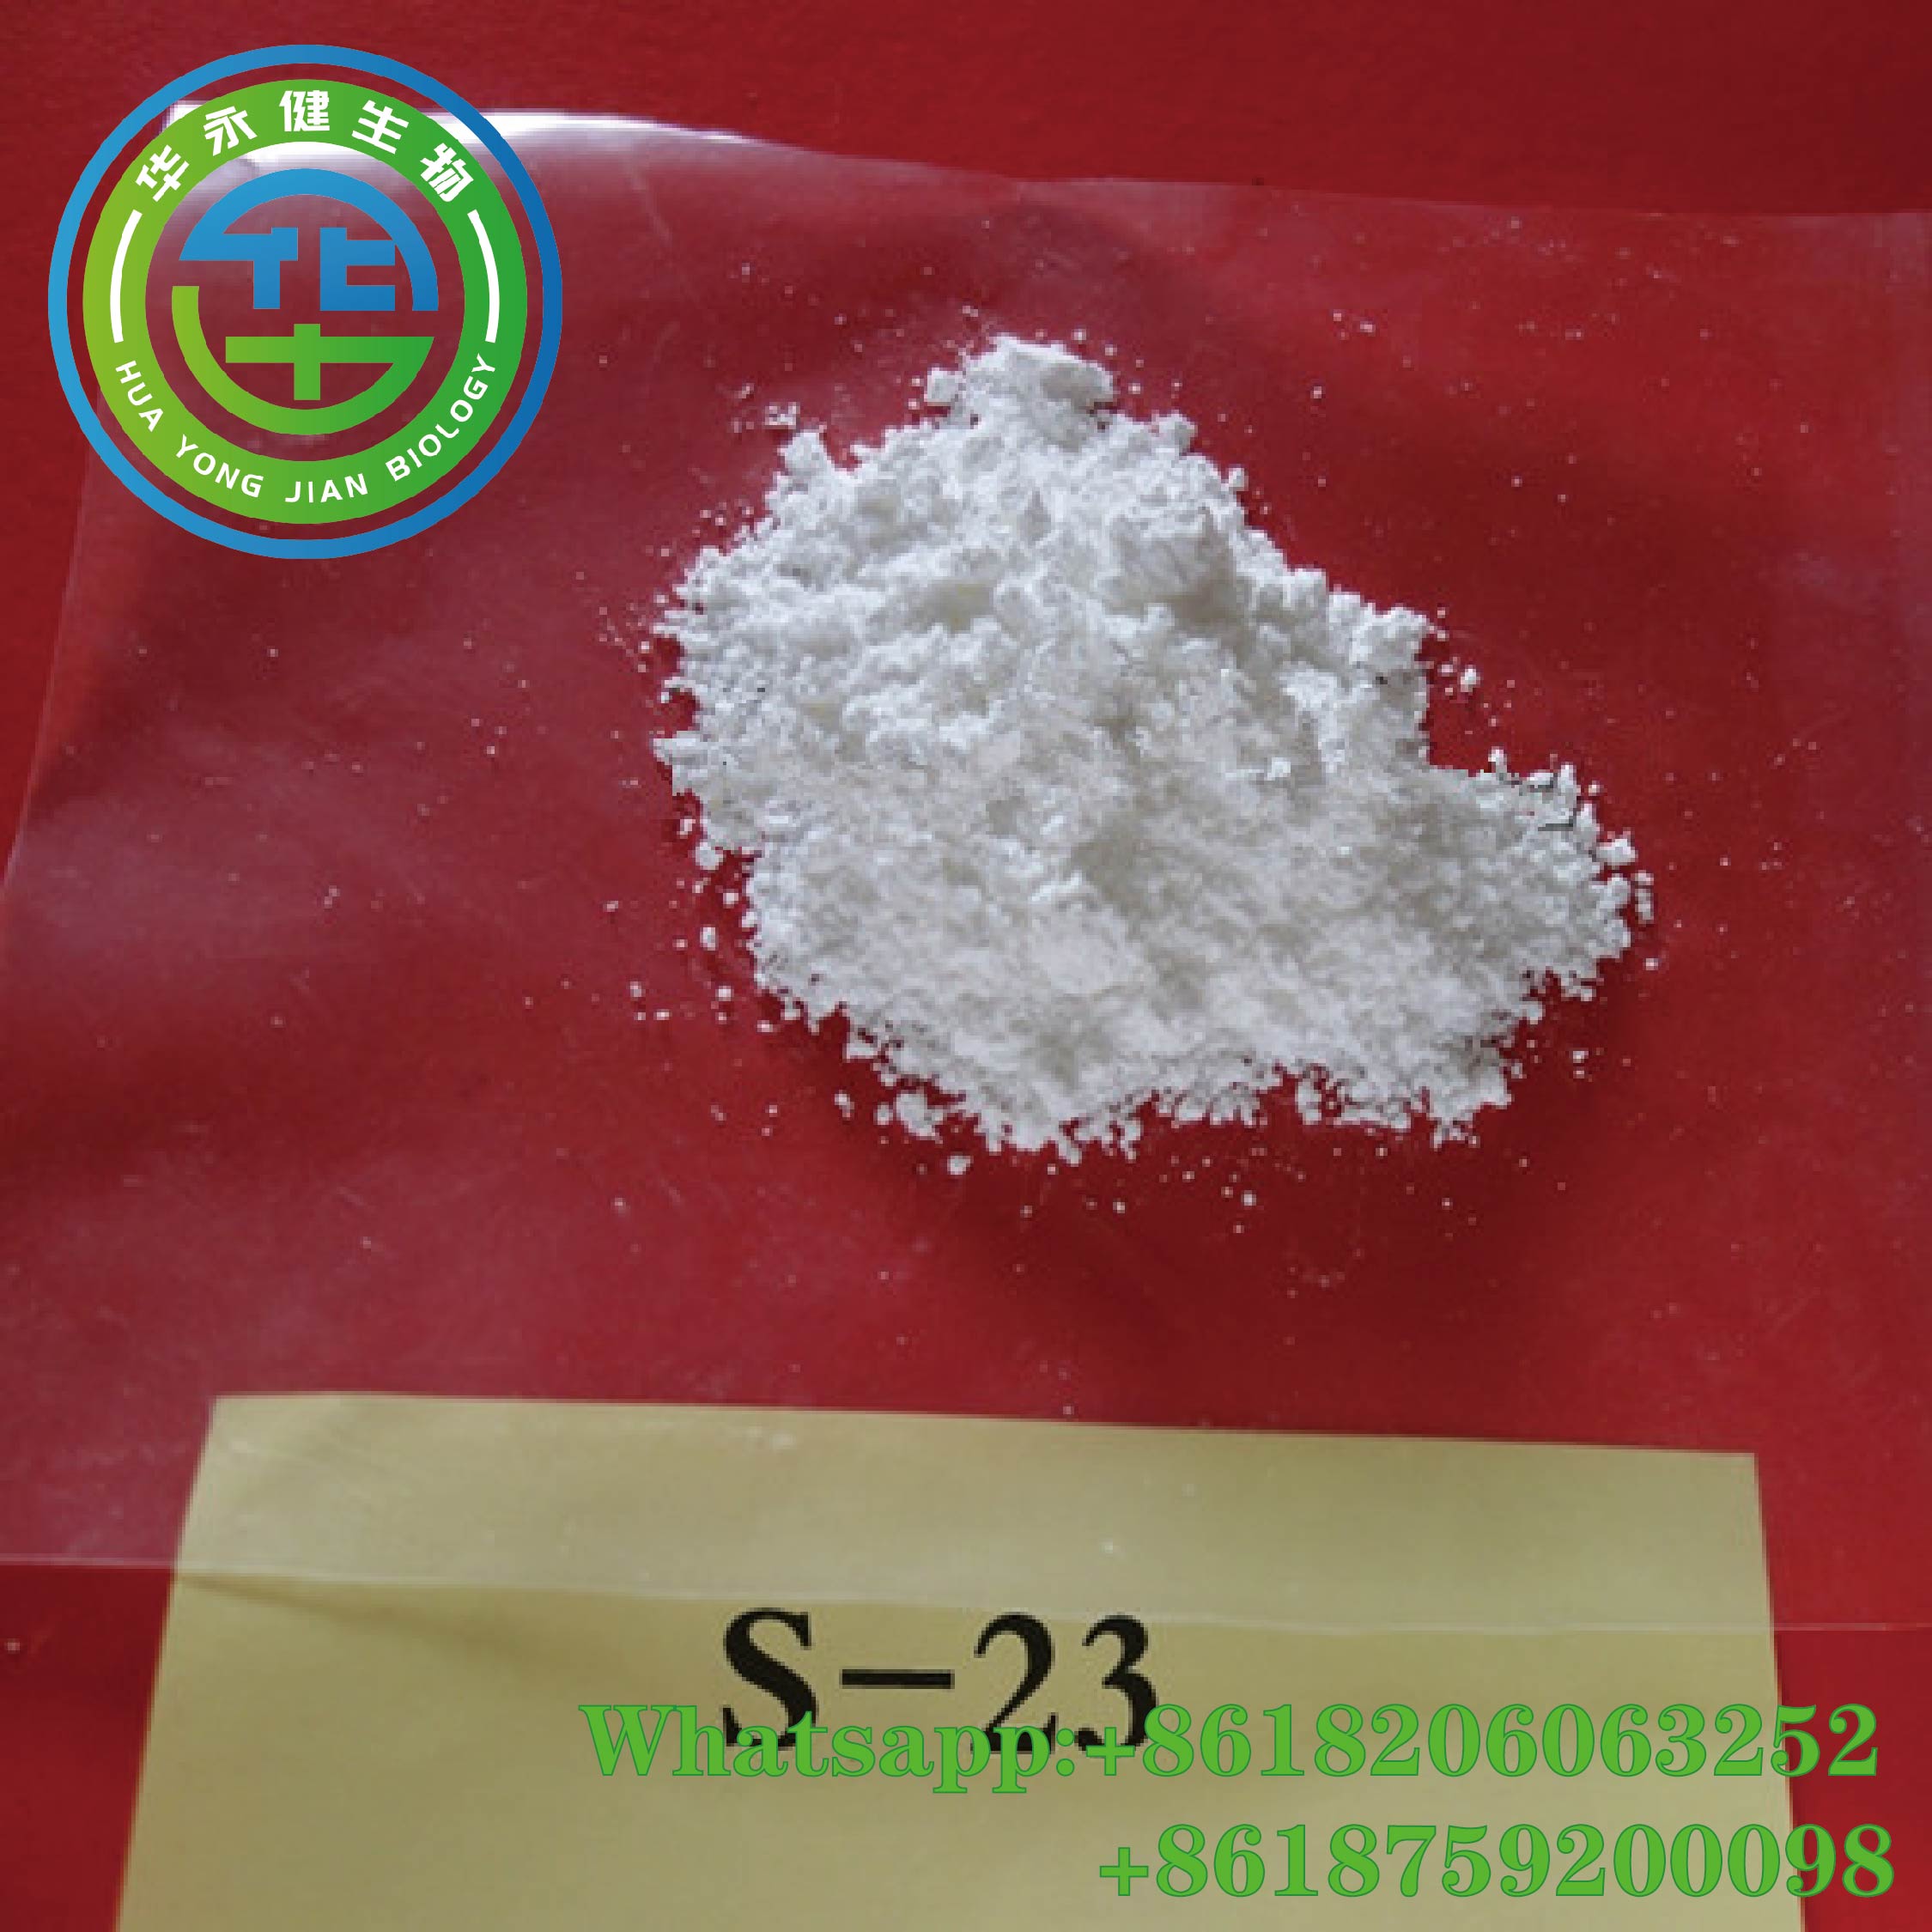 High Quality New Androgens S-23  Sarm Powder CasNO.1010396-29-8 for Body Building